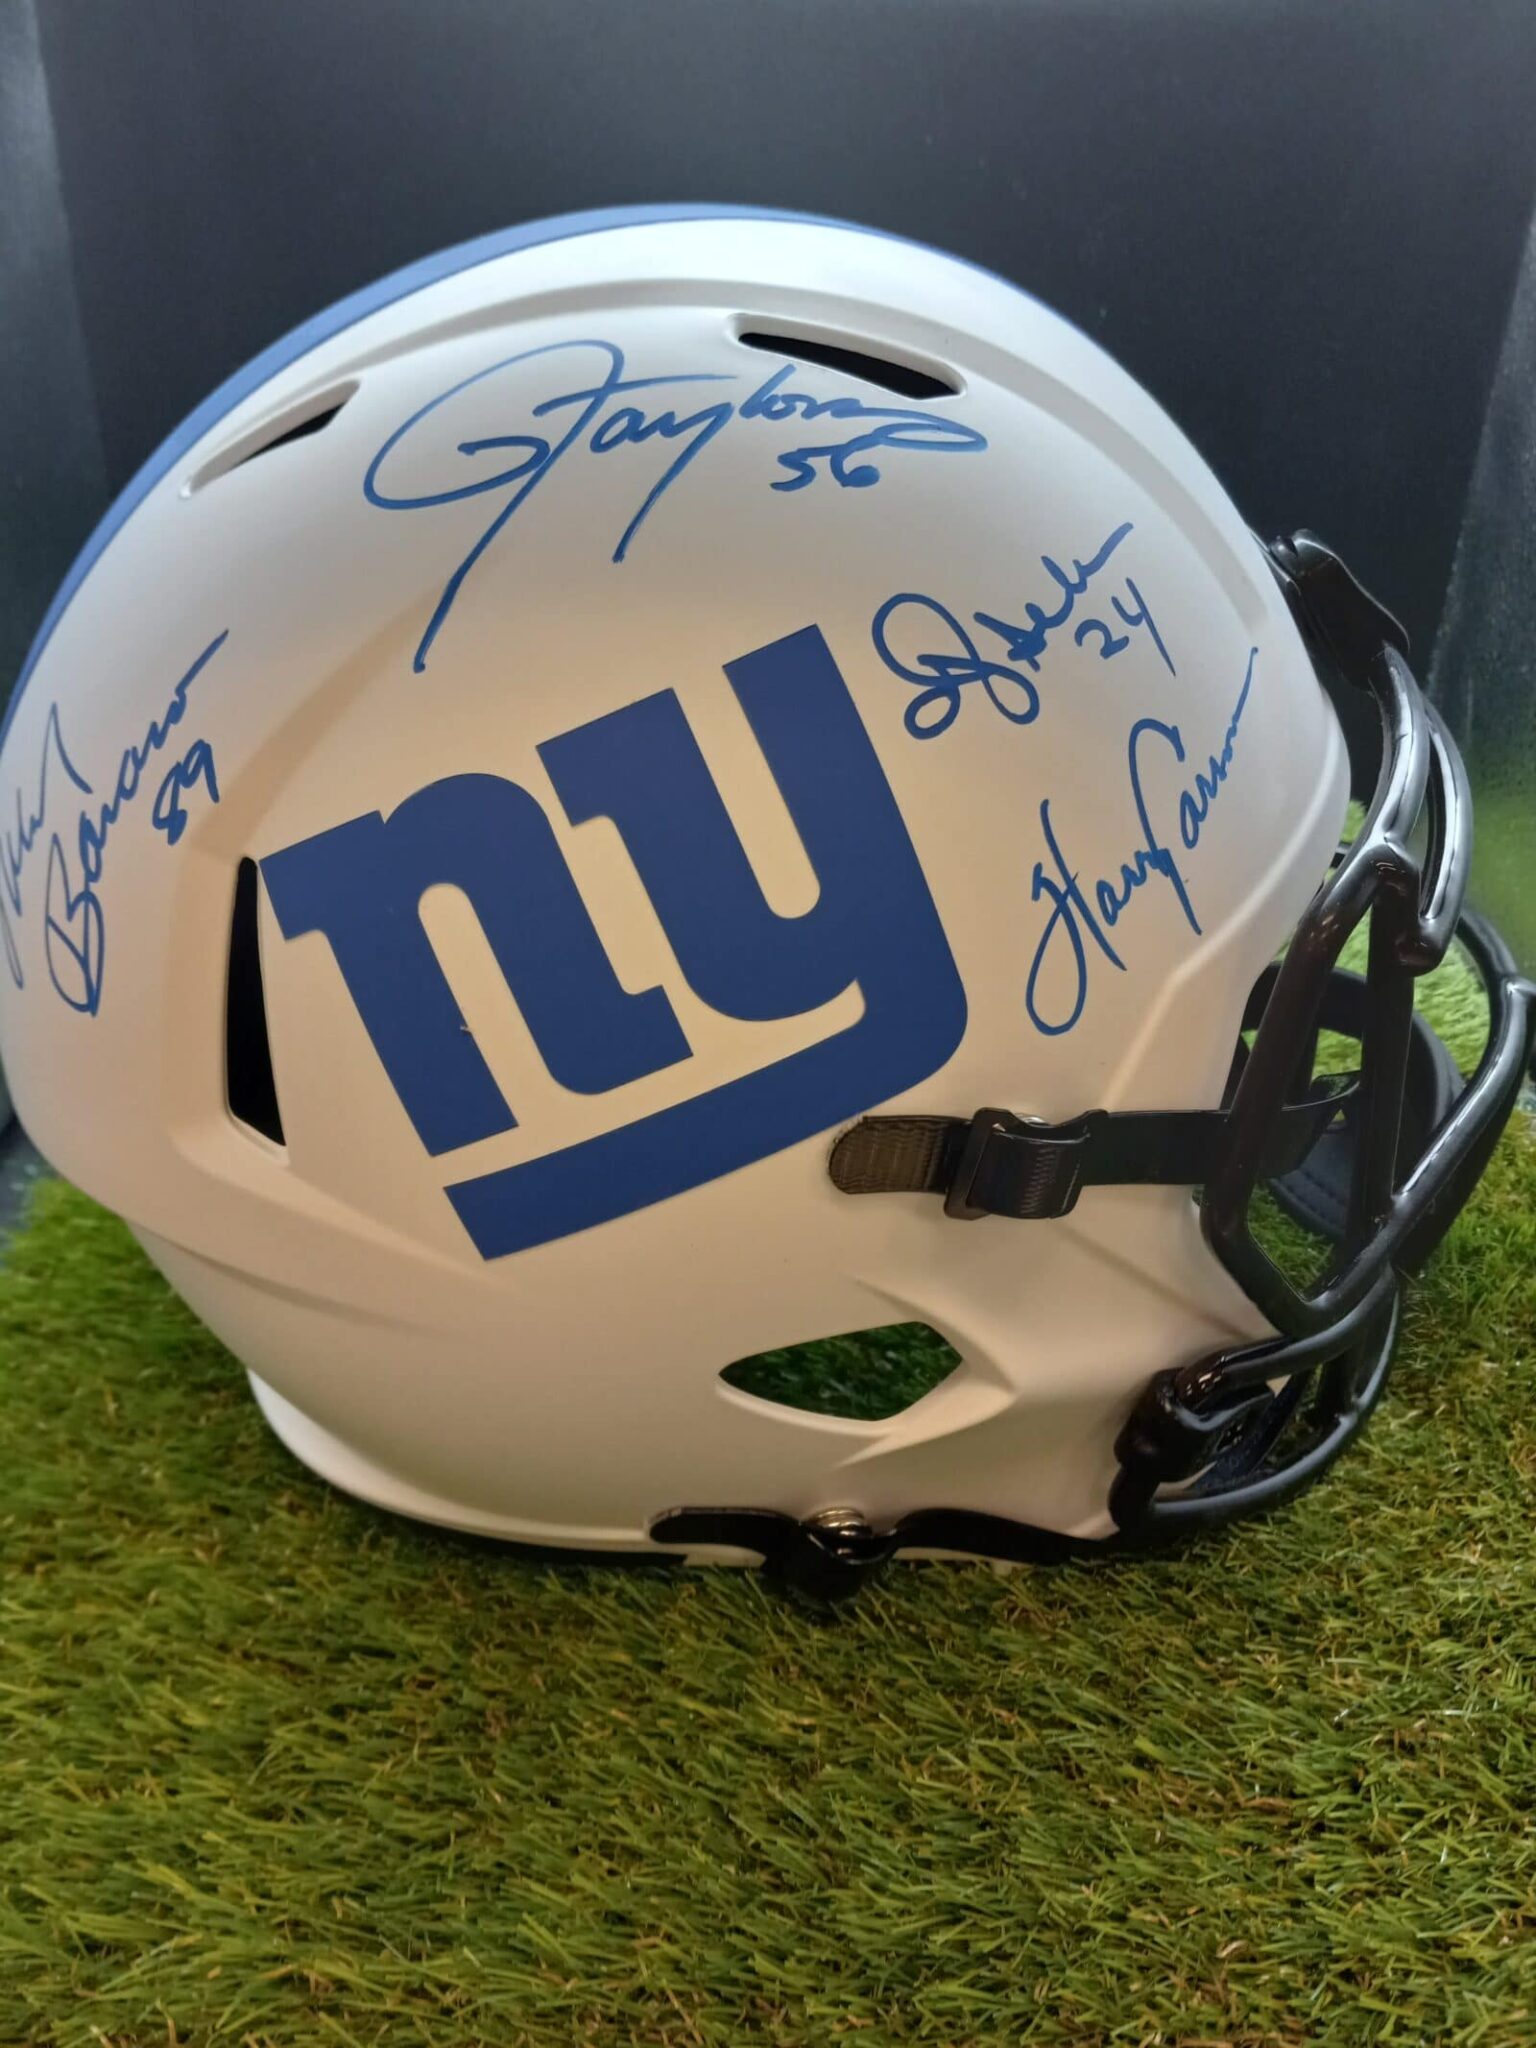 Autographed Football Helmets, football sport helmet, helmet signed